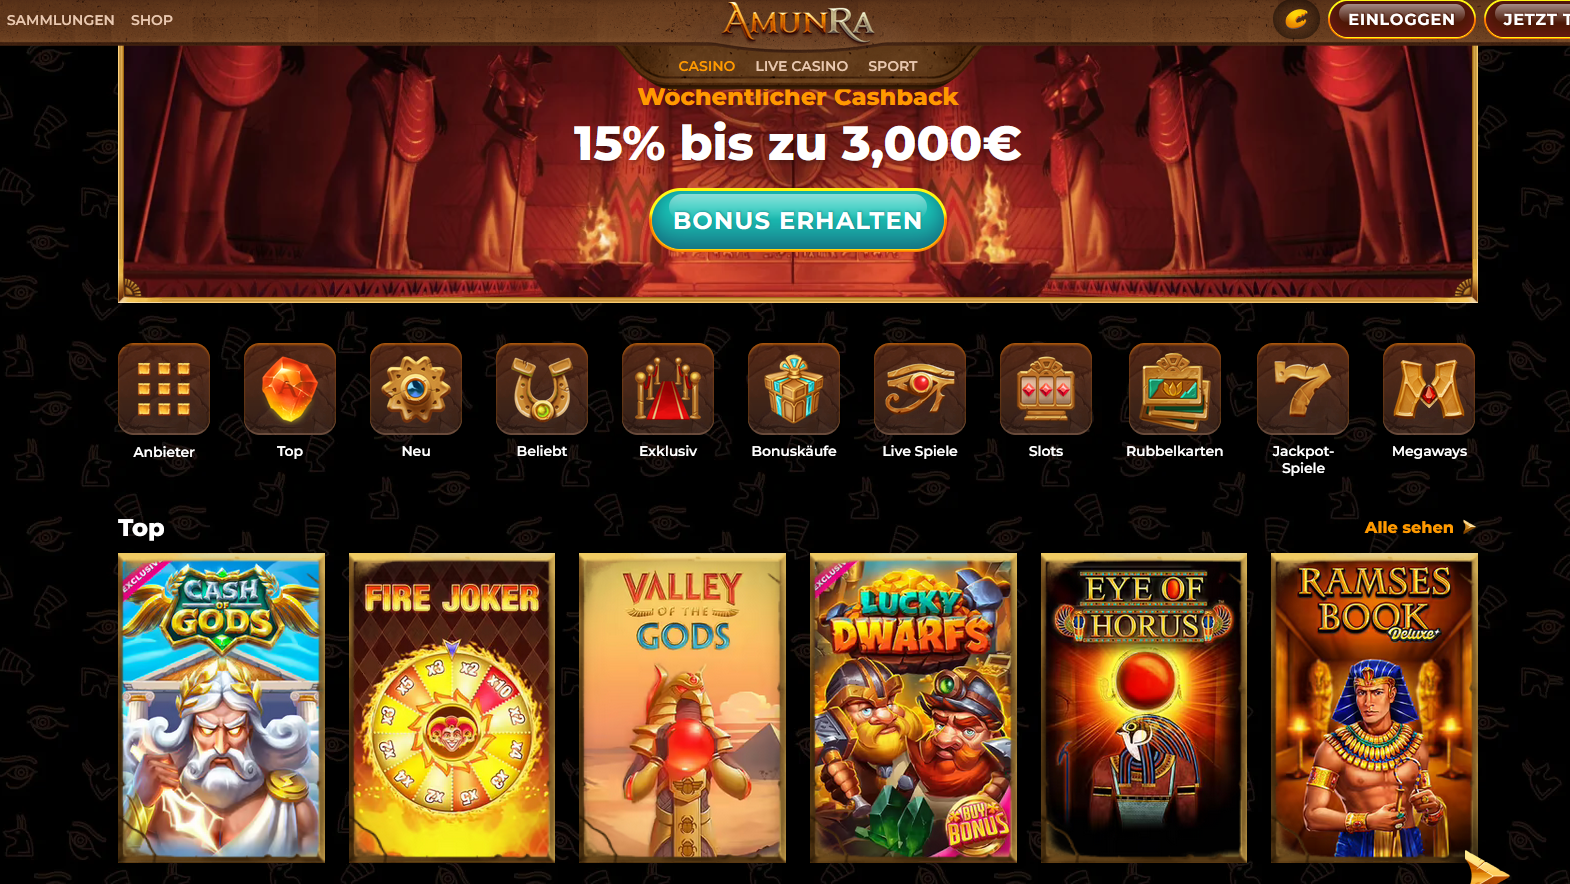 AmunRa Casino Spiele